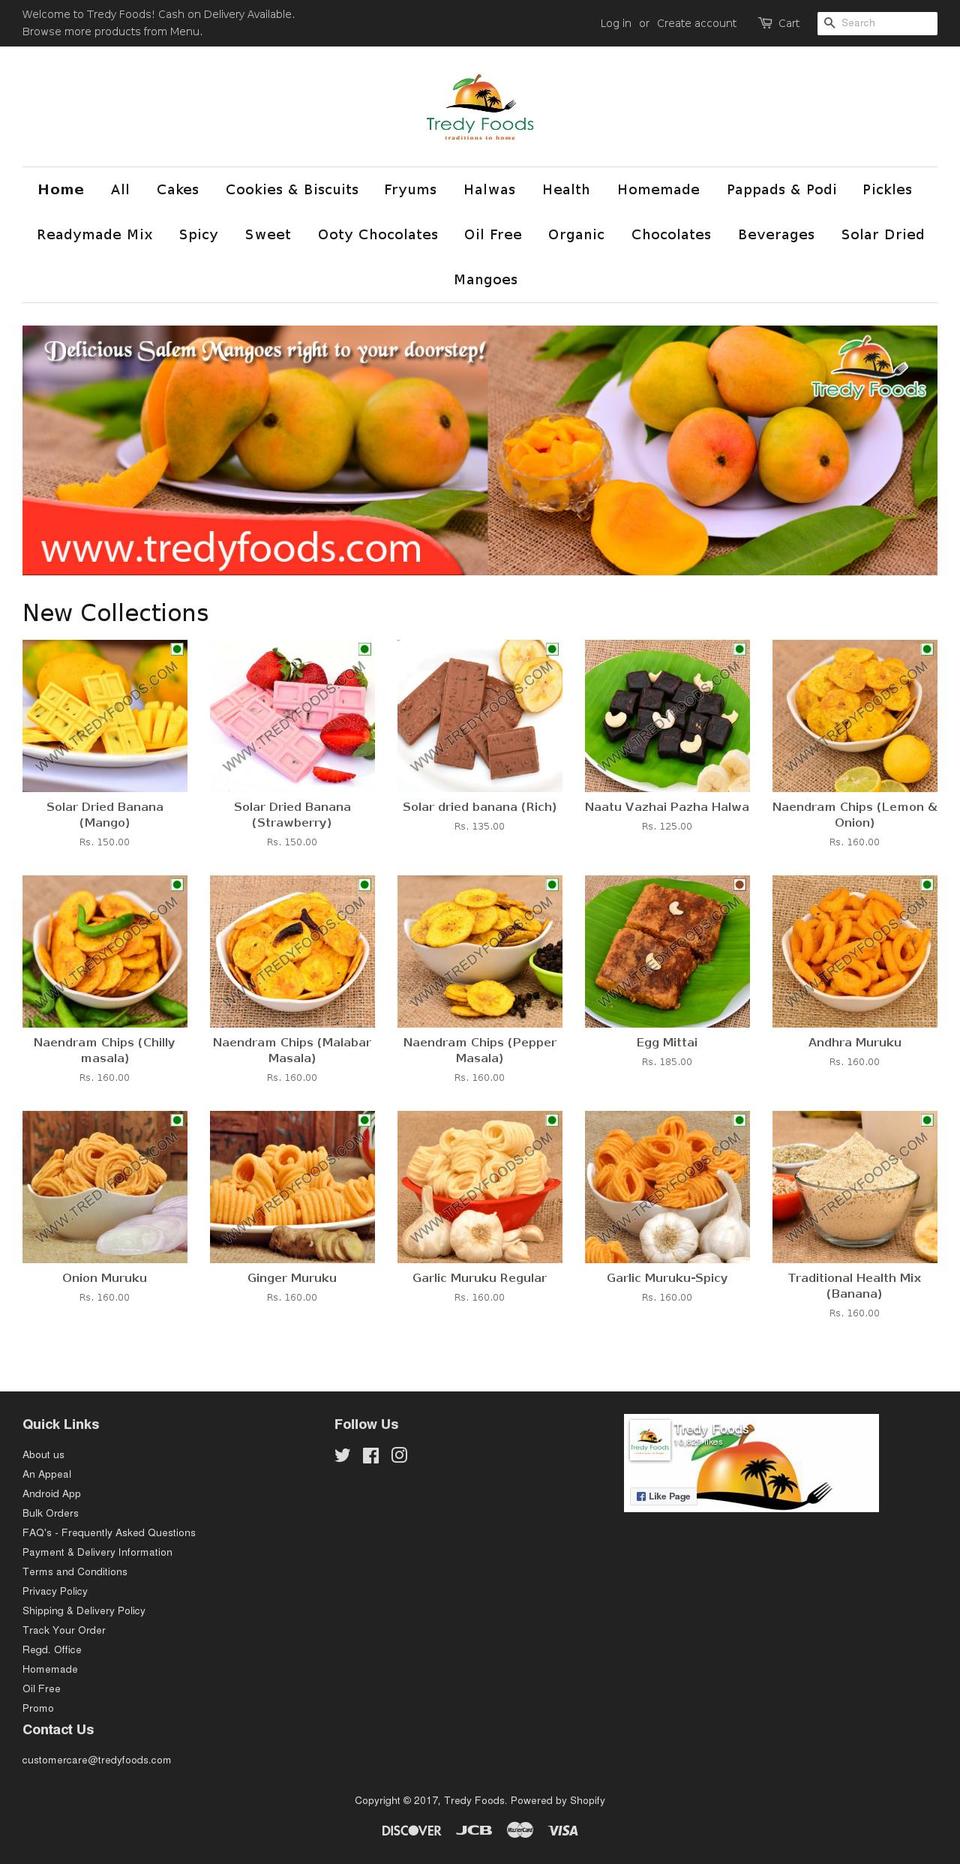 tredyfoods.com shopify website screenshot